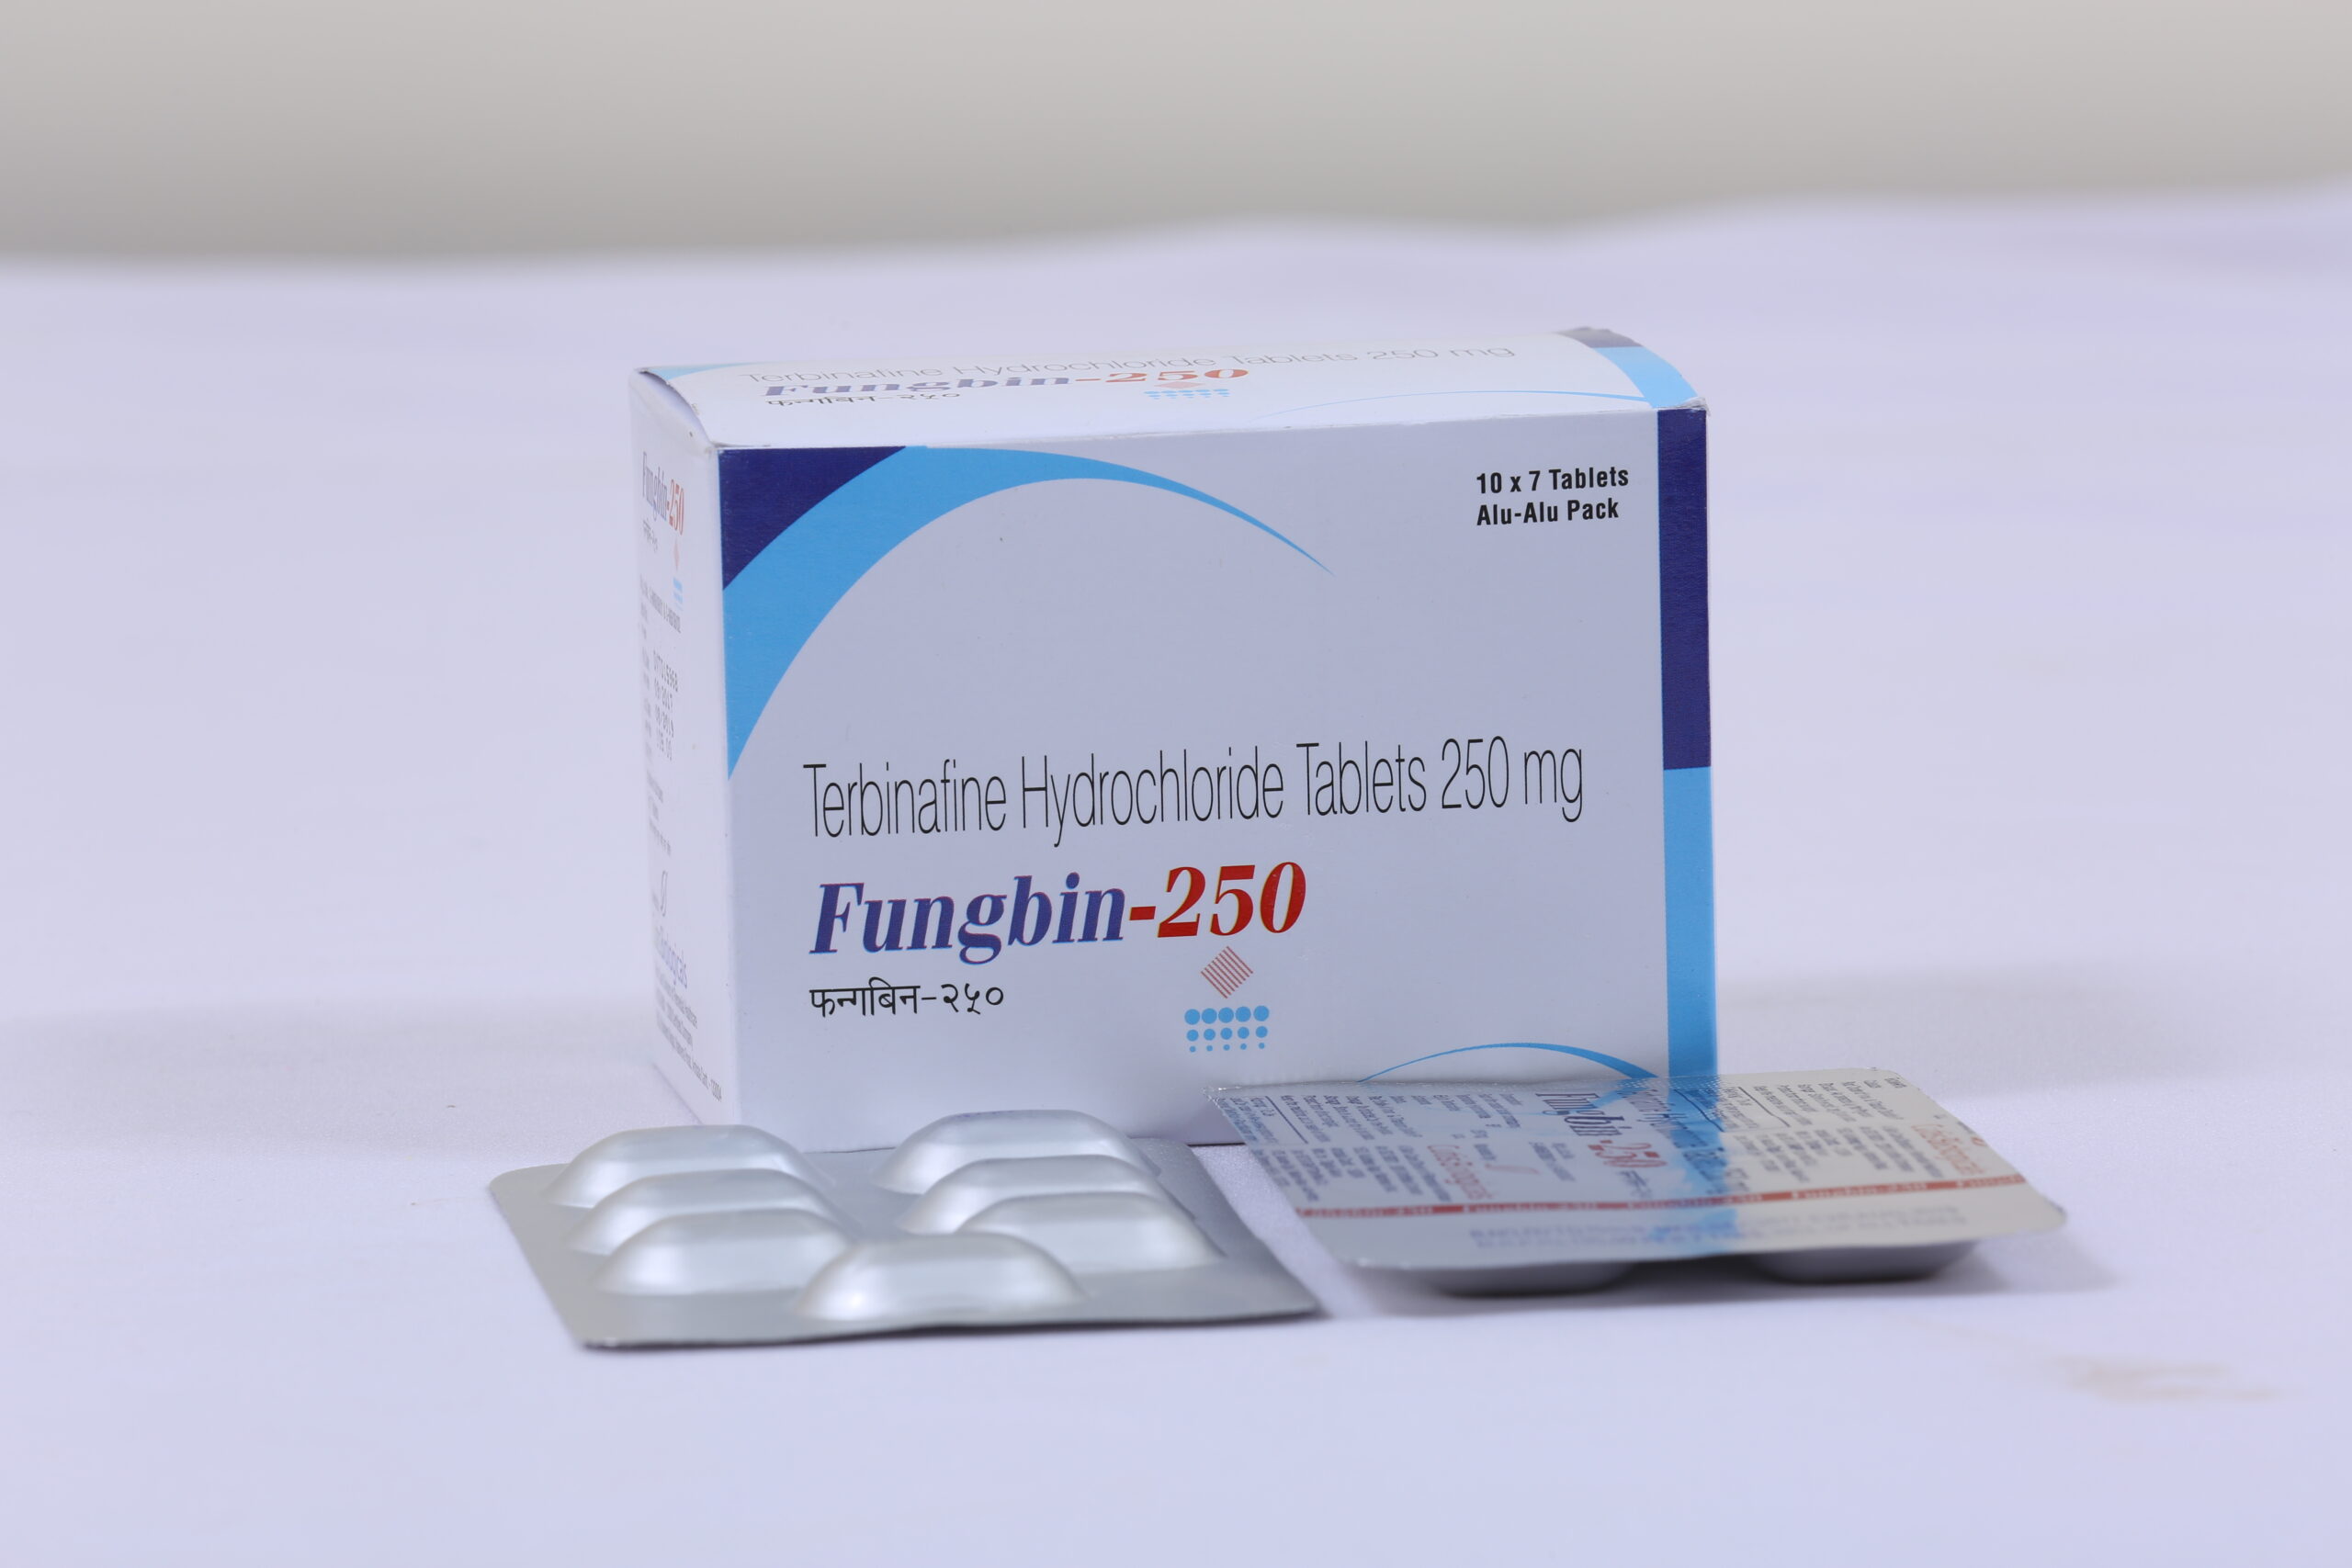 FUNGBIN-250 (Terbinafine 250mg)